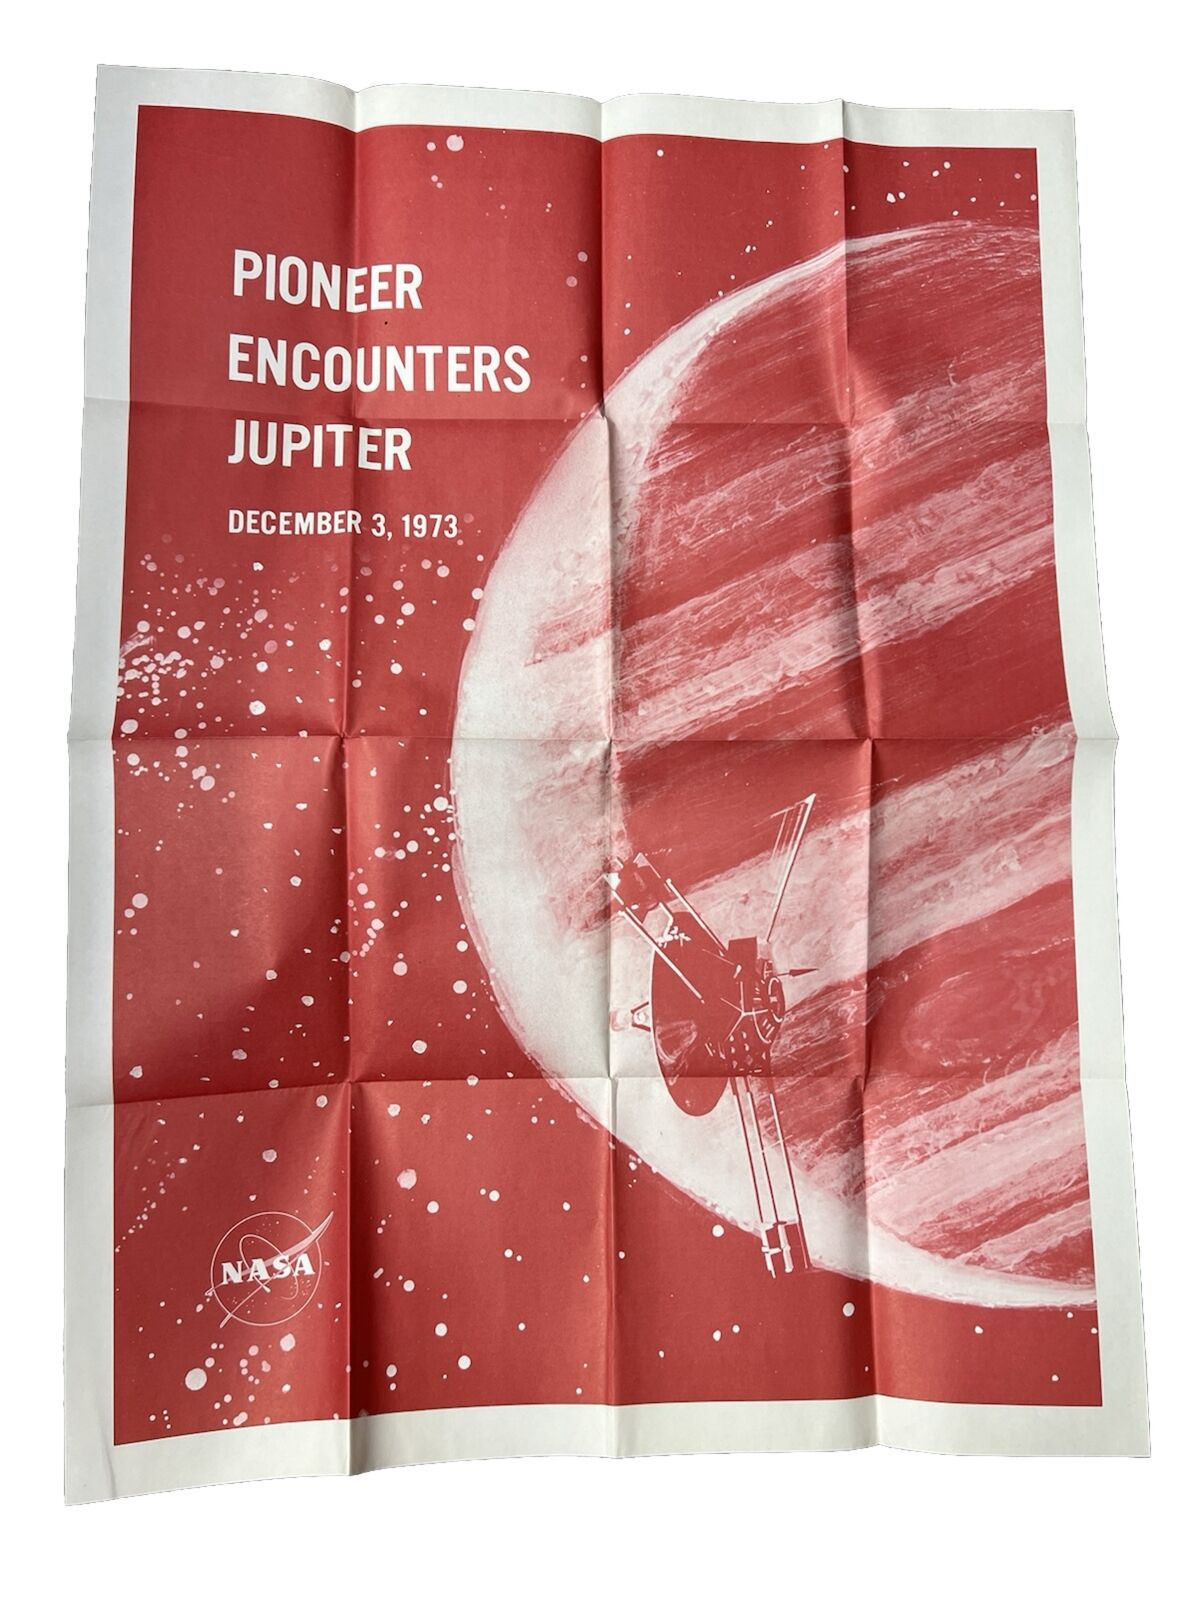 1973 NASA Folded Poster: Pioneer Encounters Jupiter  Dec 3, 1973